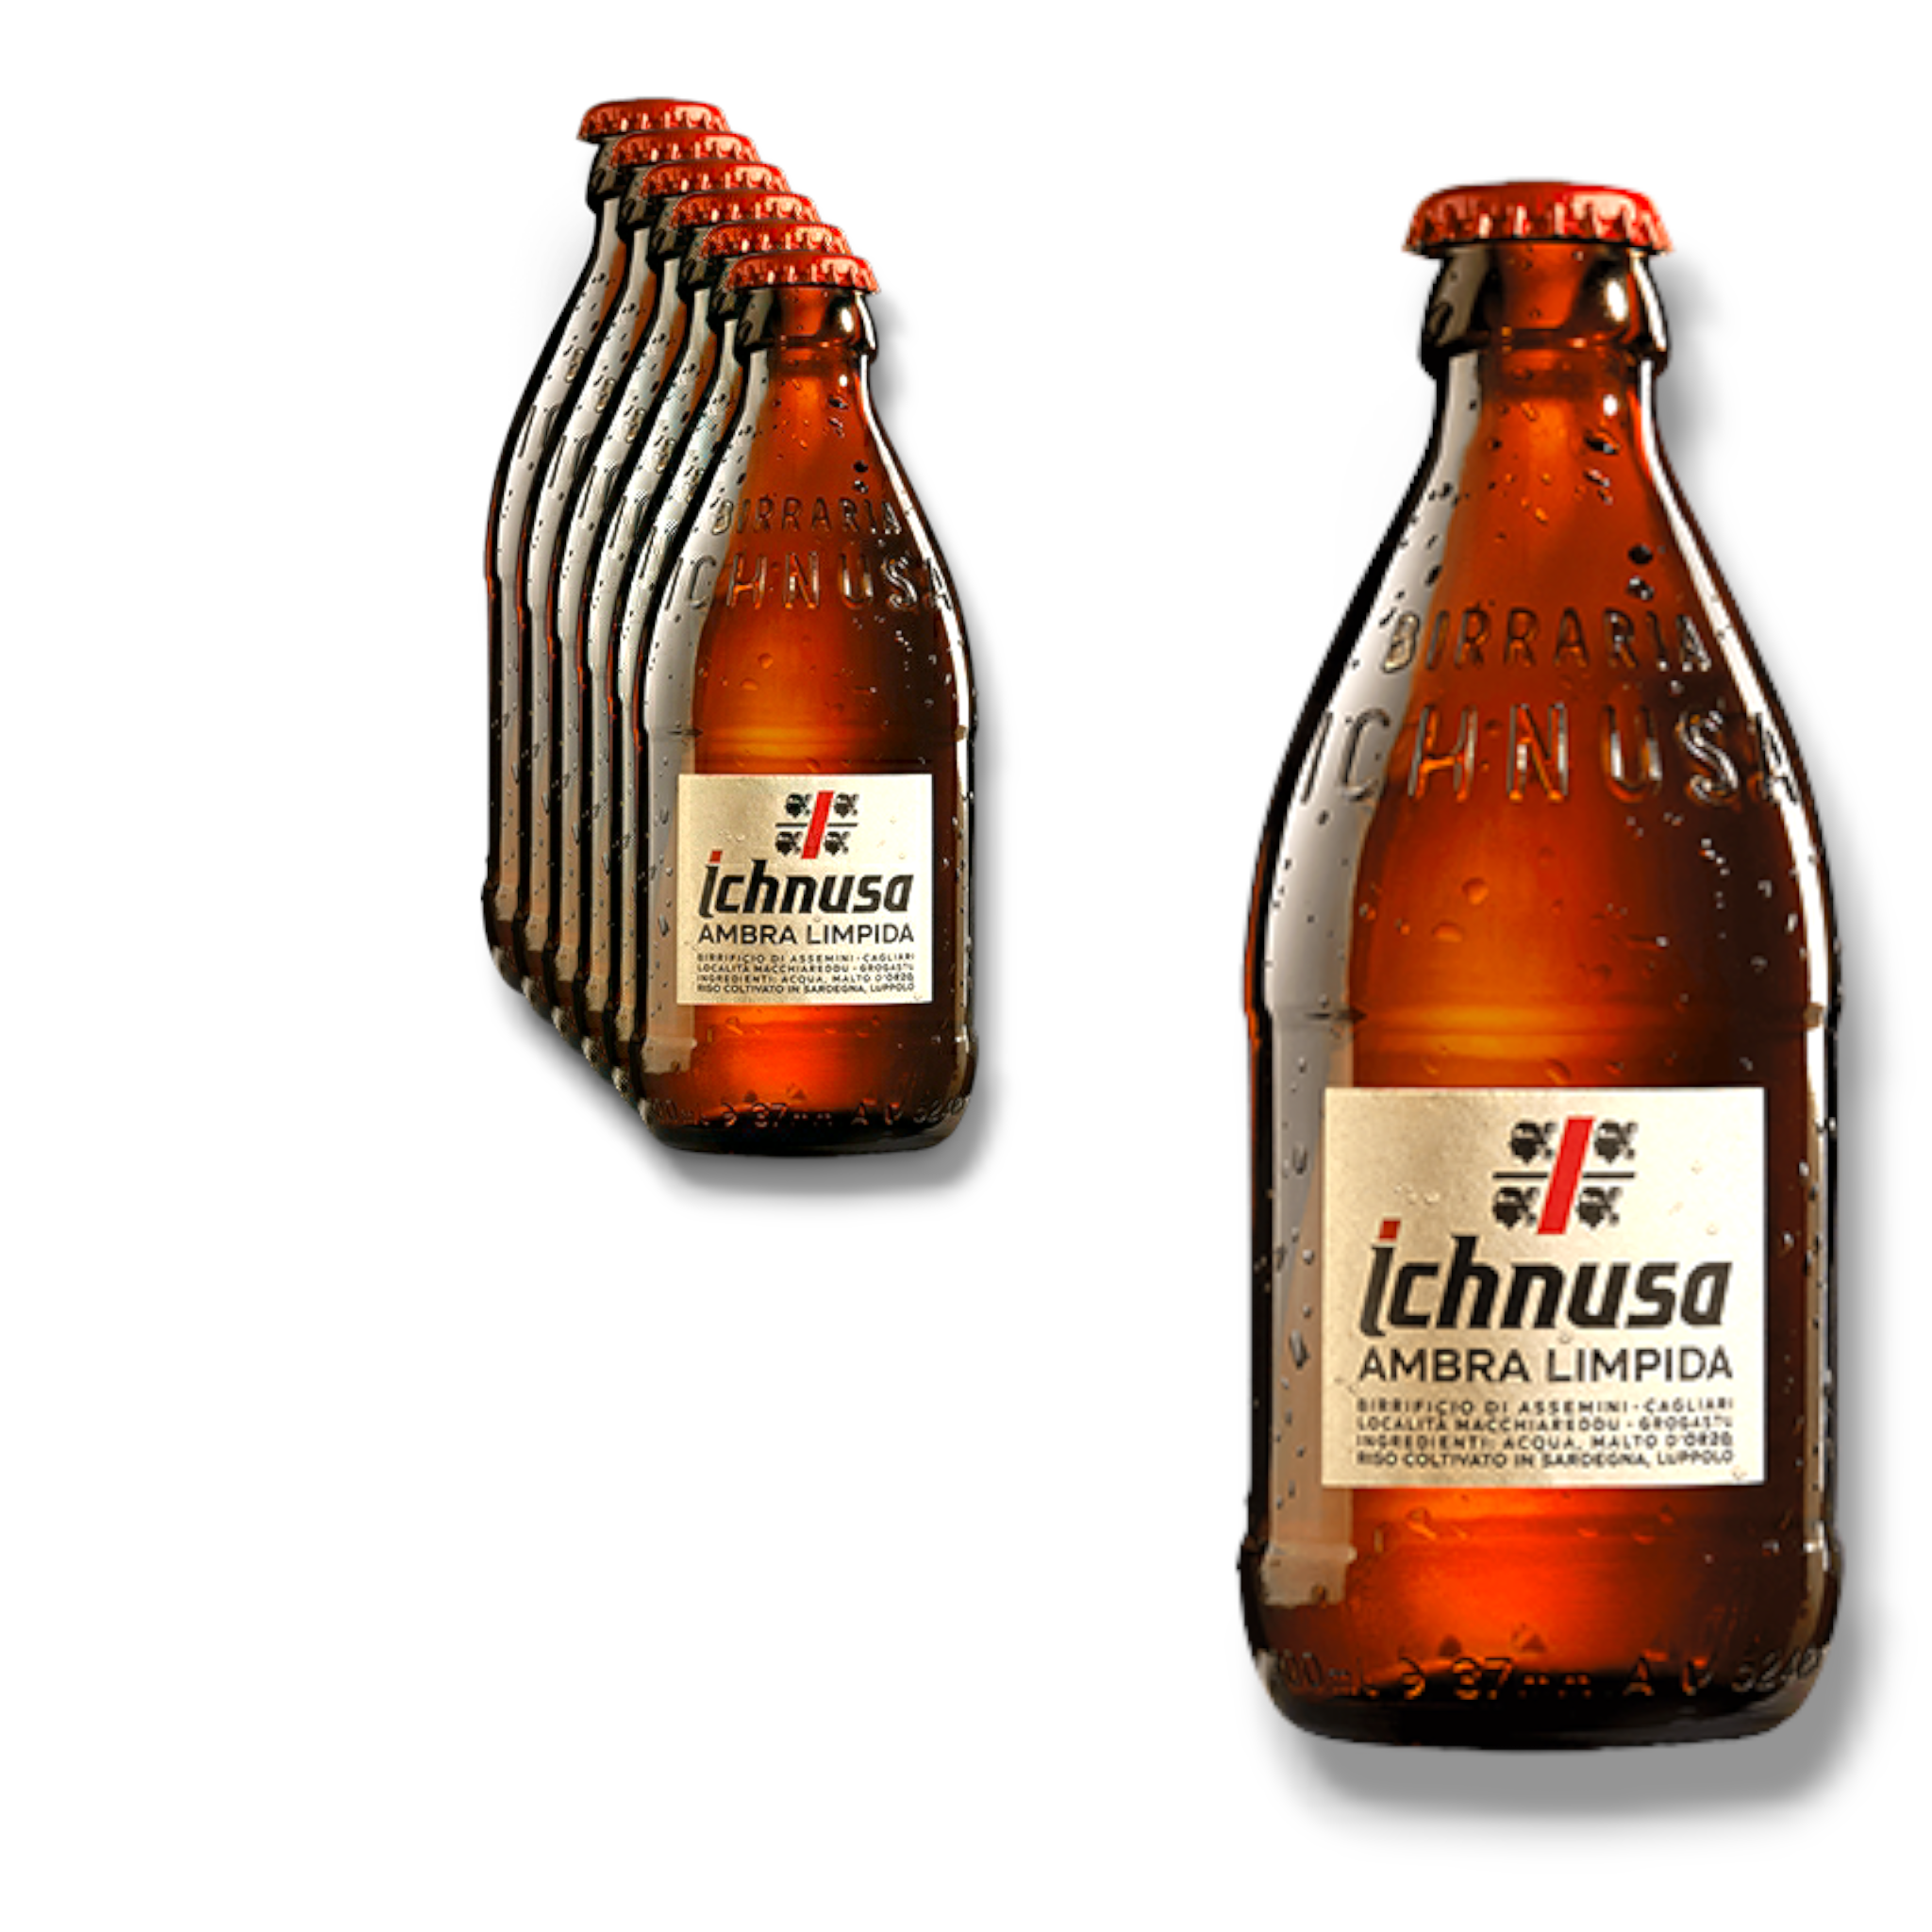 Birra Ichnusa Ambra limpida 0,3l Flasche - das neue Kultbier aus Sardinien mit 5% Vol.